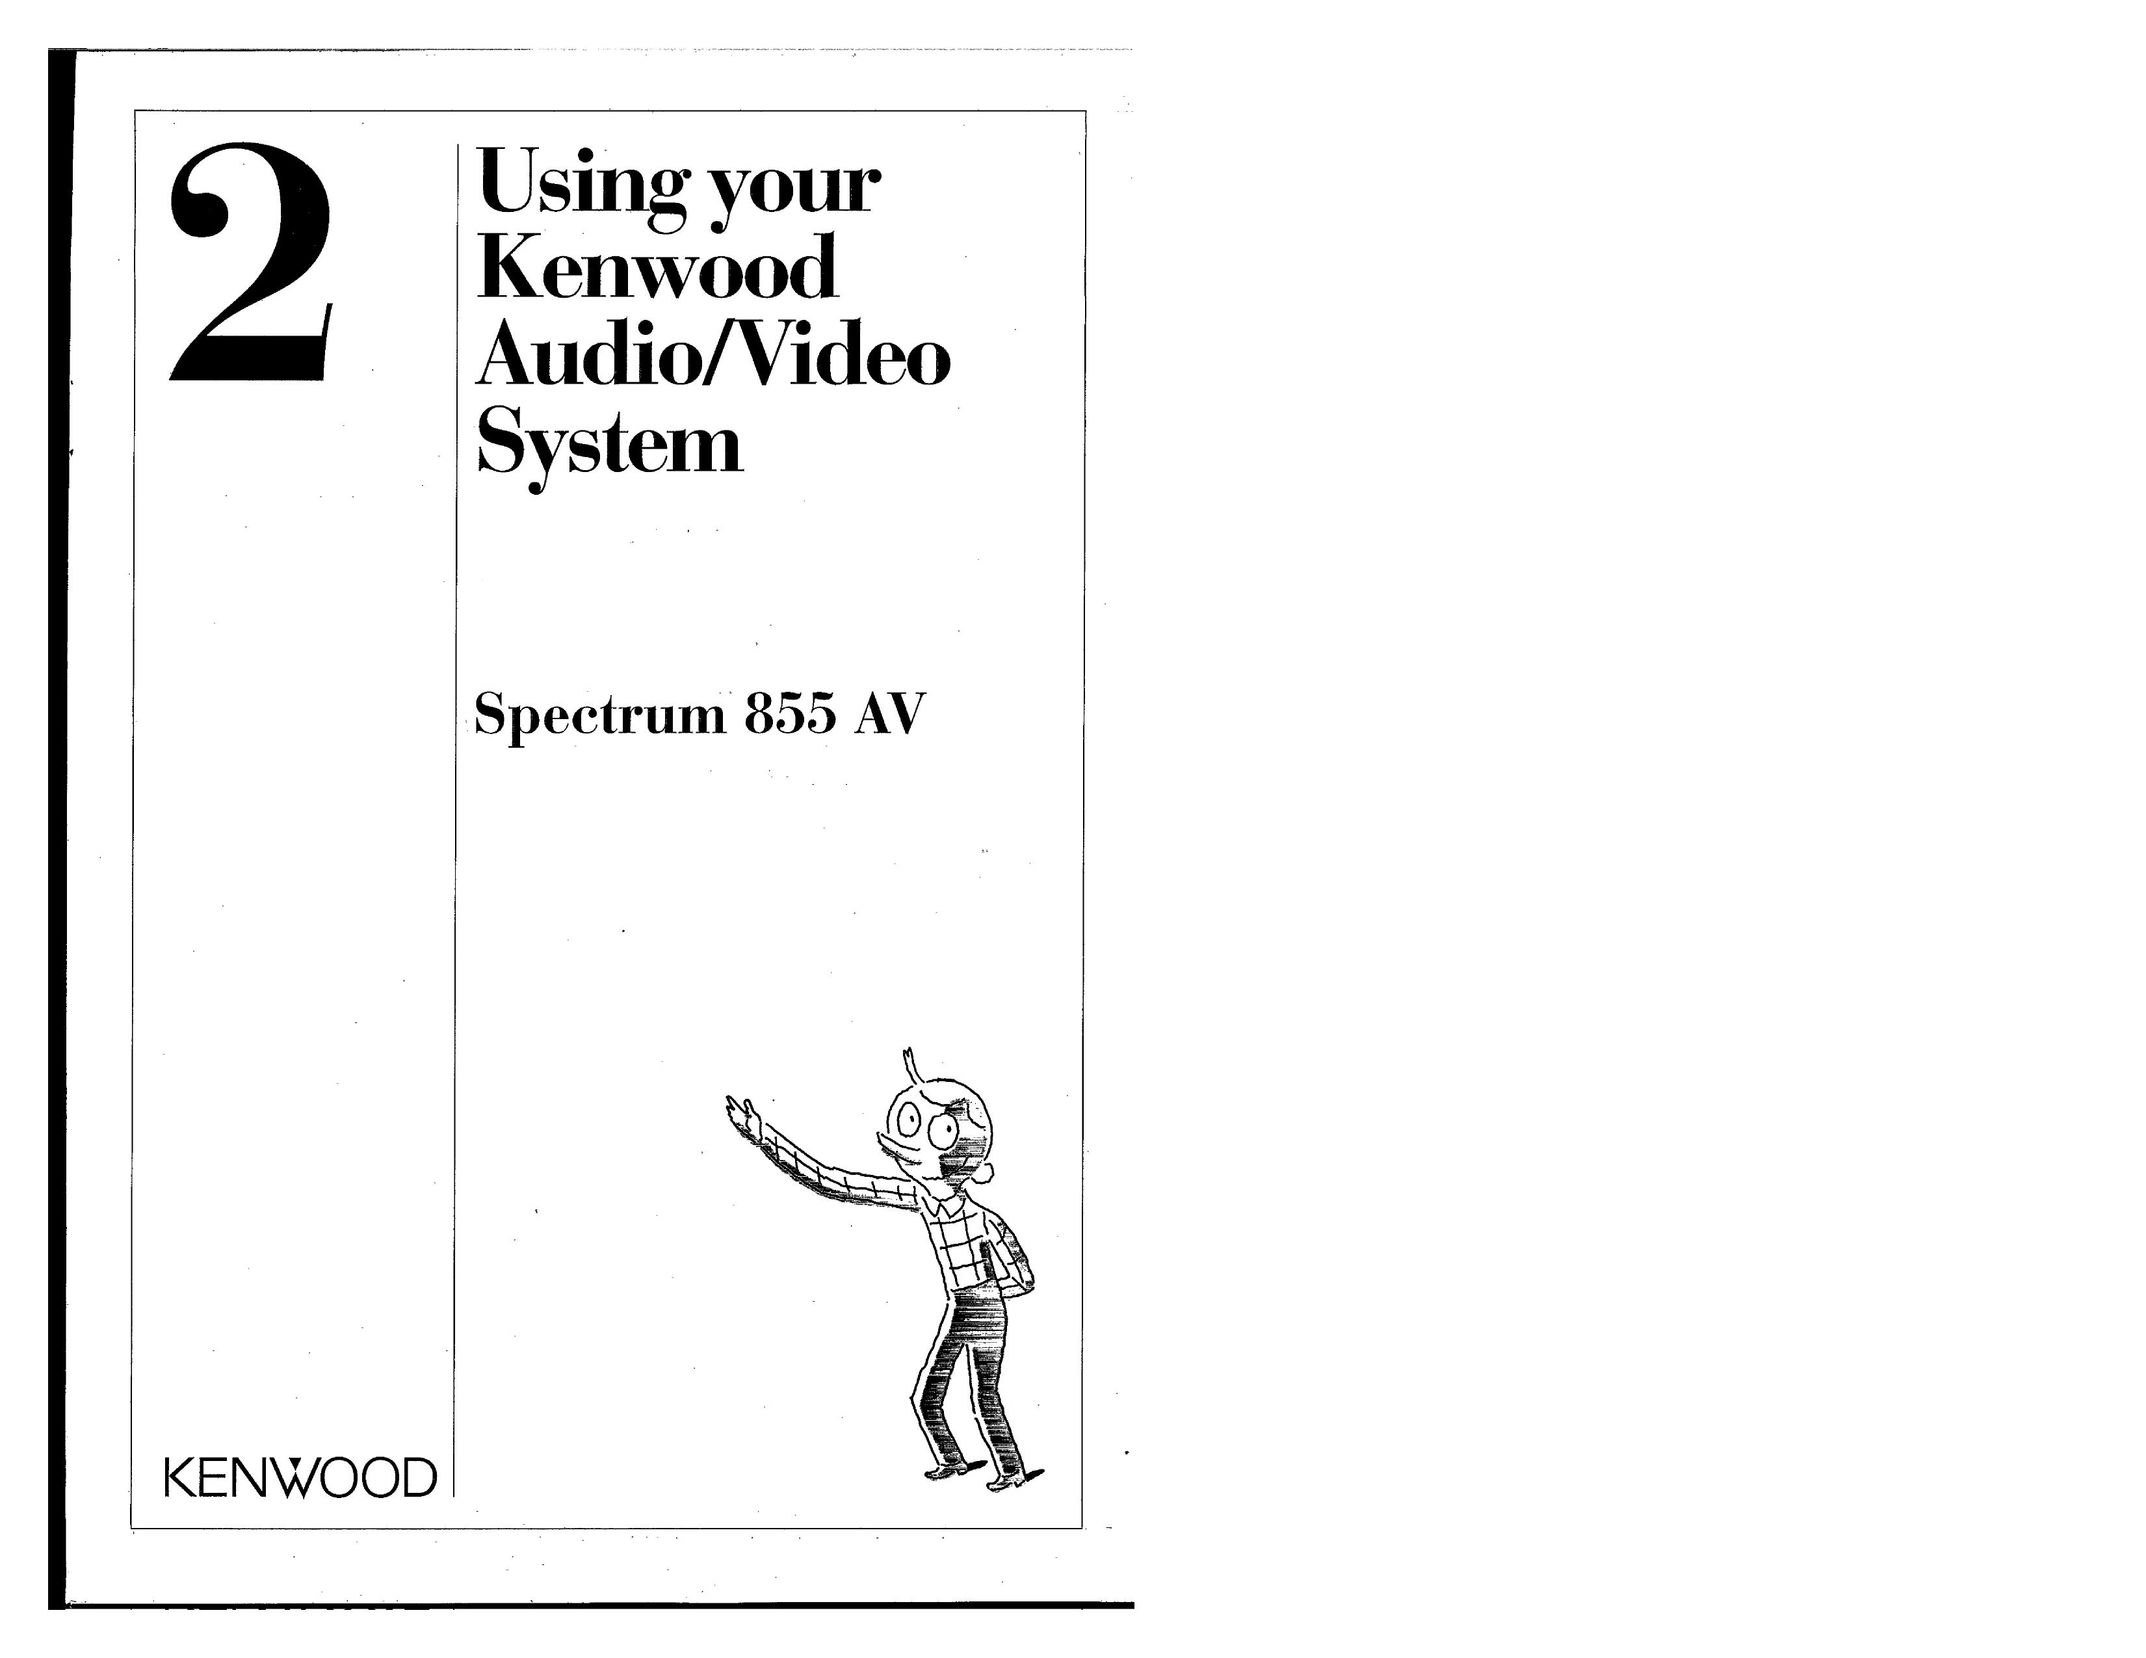 Kenwood 855 AV Stereo System User Manual